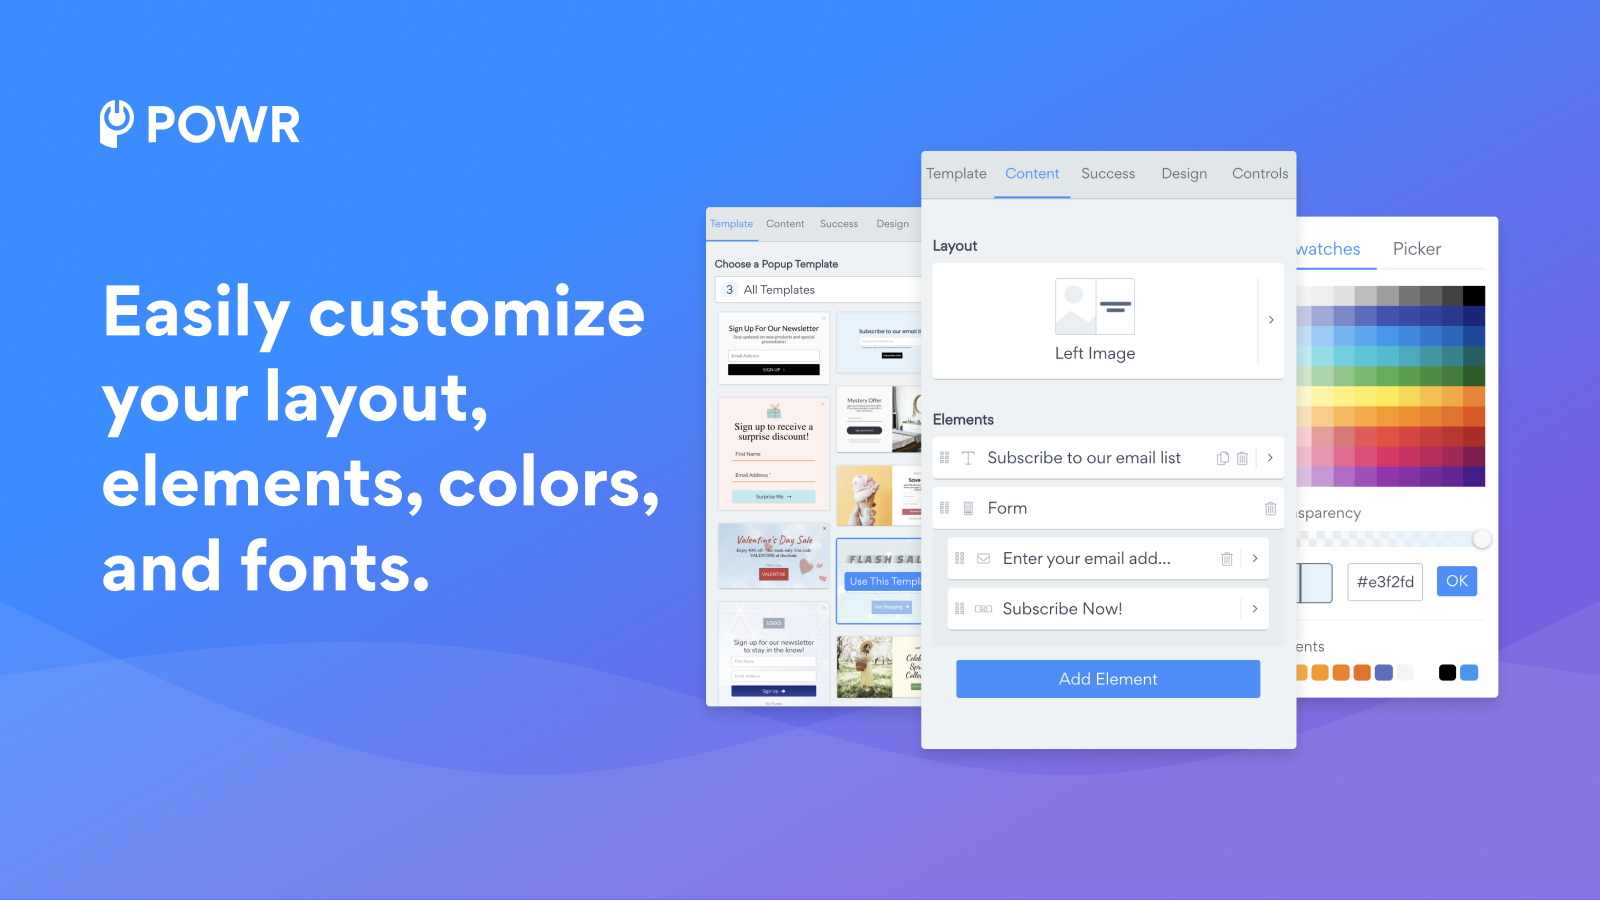 Anpassa enkelt din layout, element, färger och typsnitt